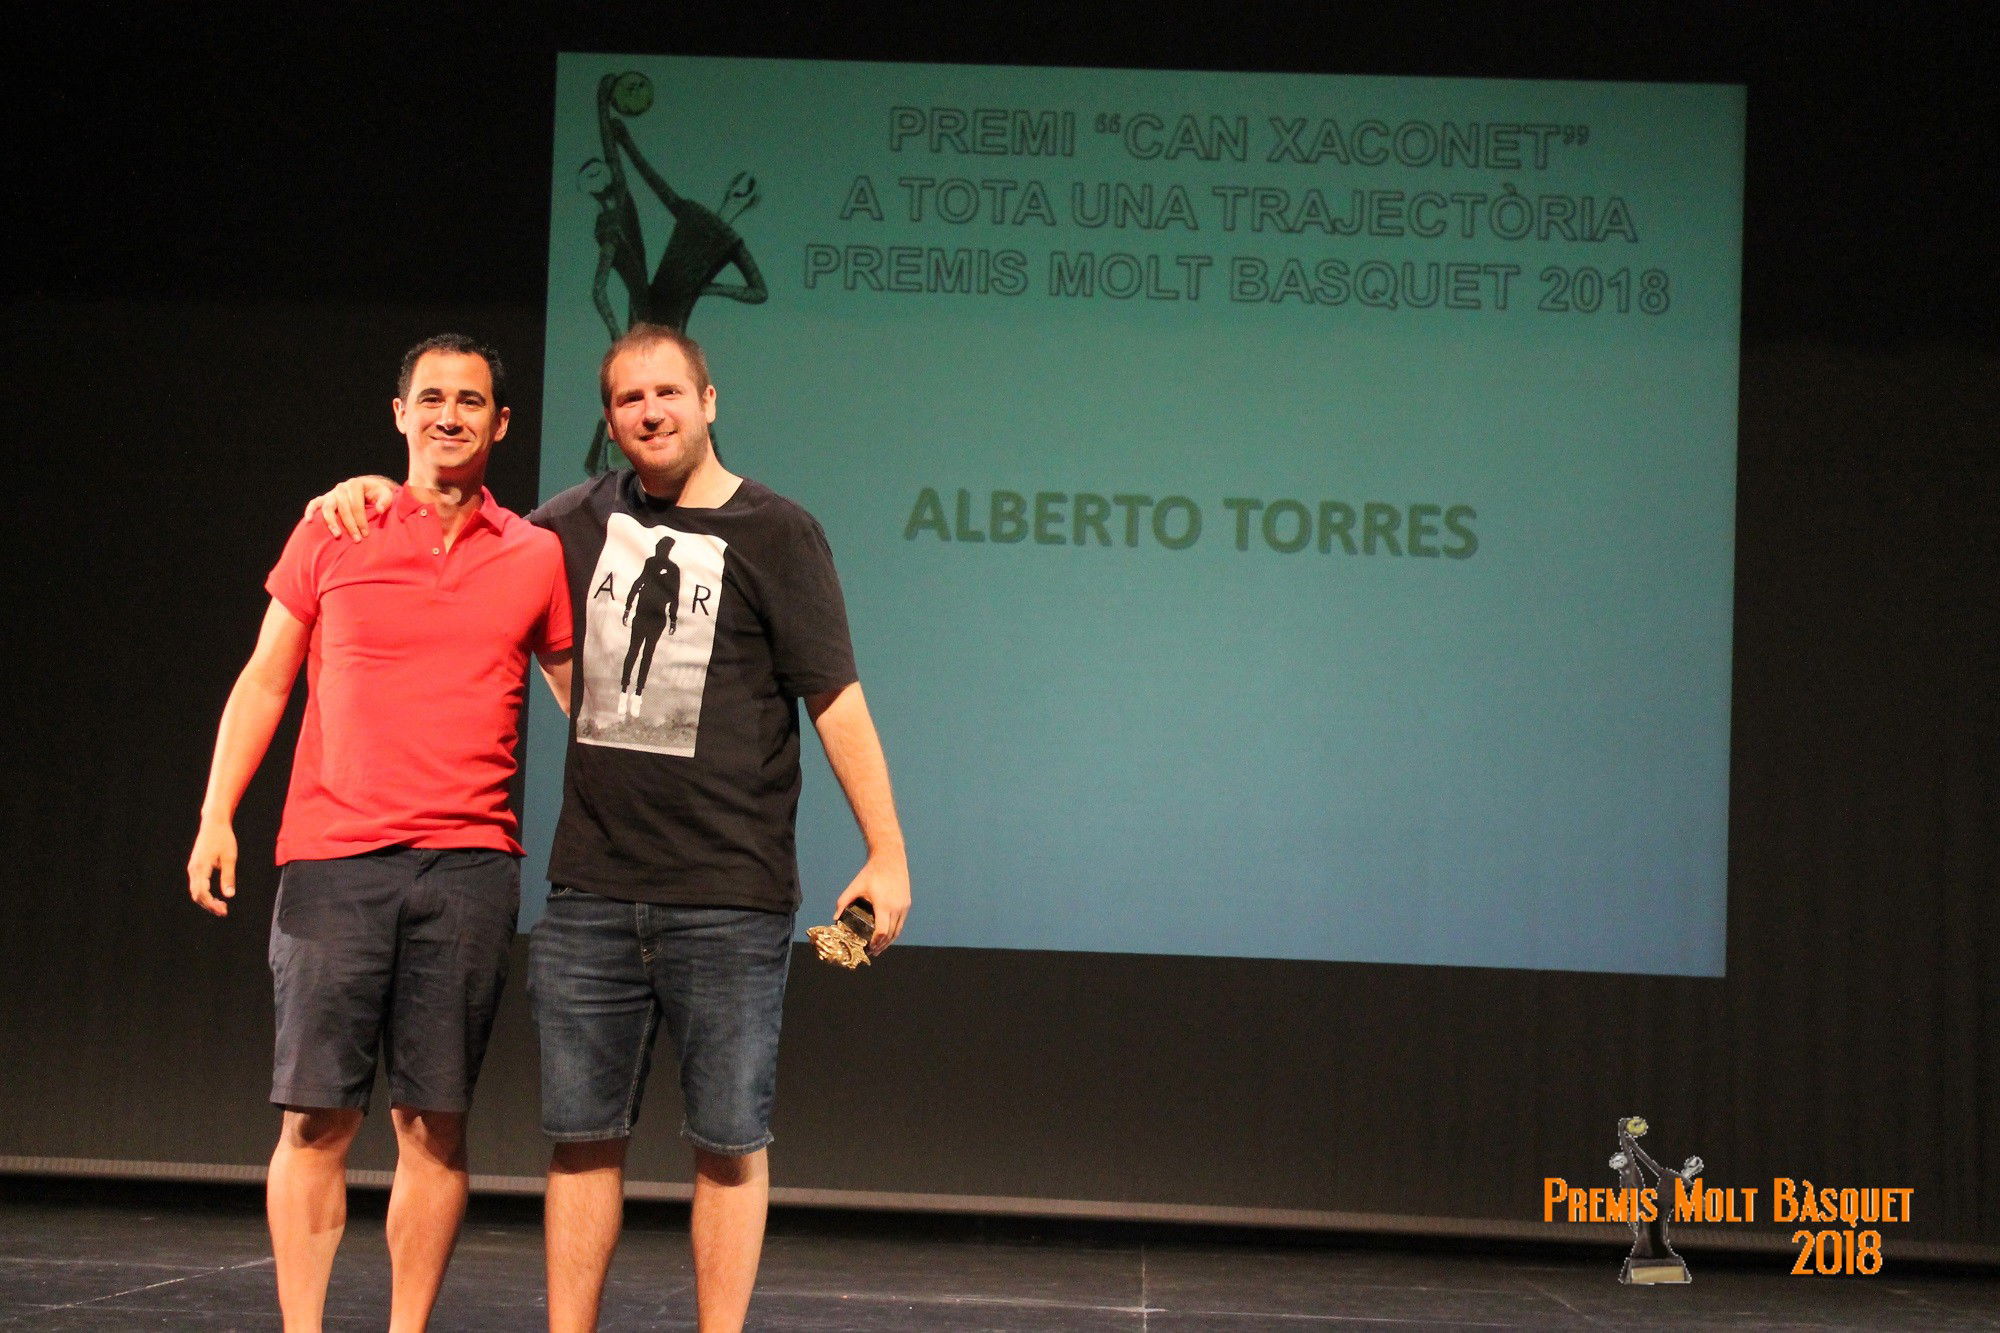 Premi Can Xaconet " A Tota una Trajectòria": Alberto Torres